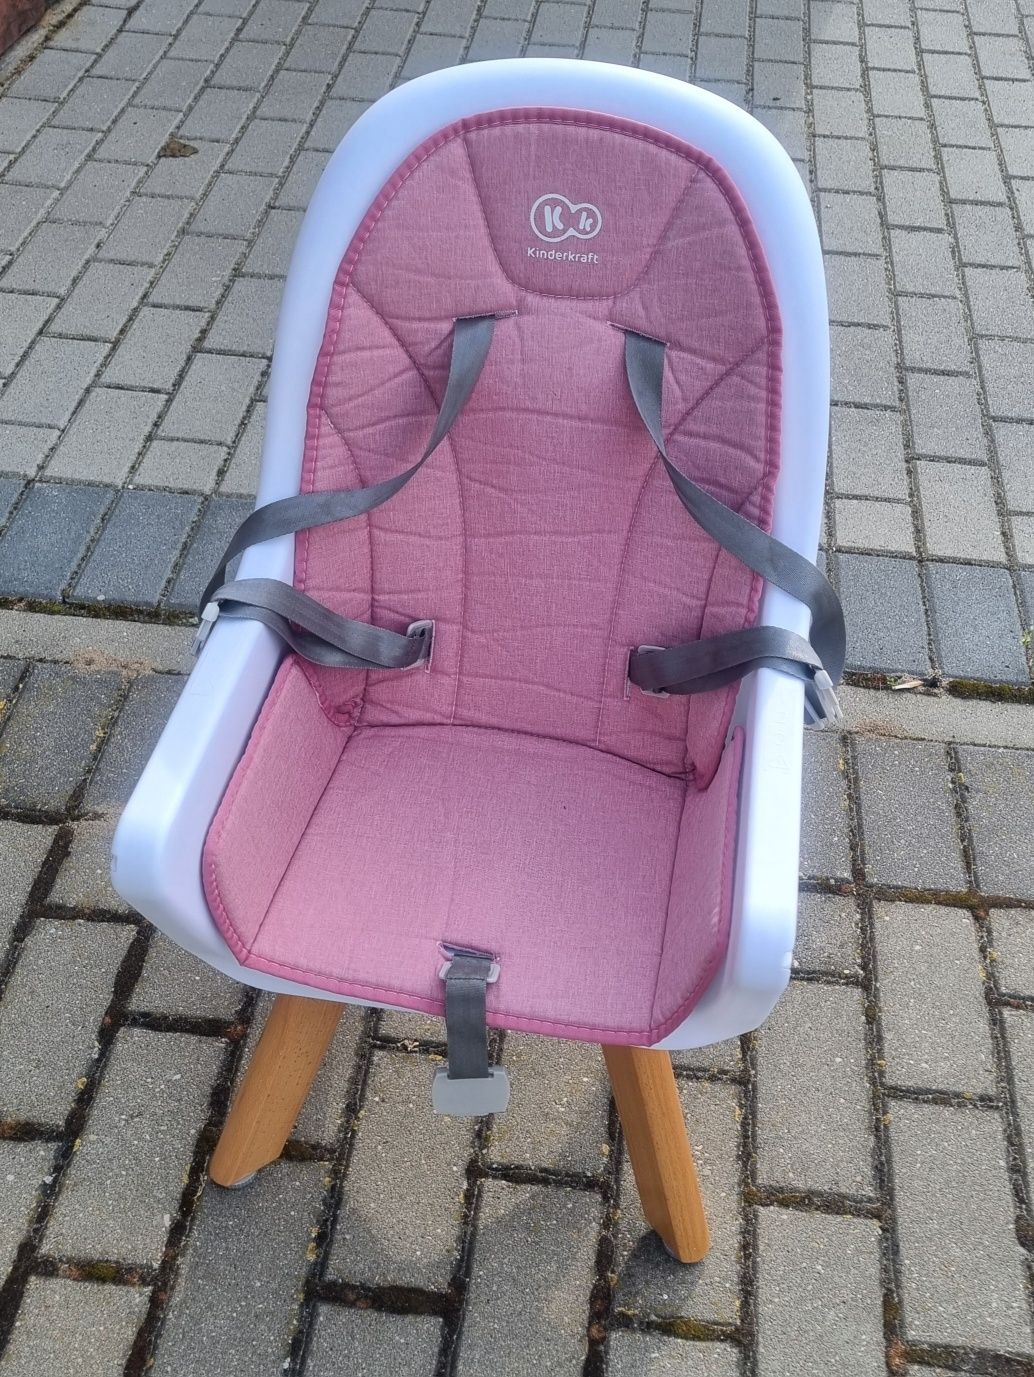 Krzesełko KinderKraft tixi różowe 2w1 do karmienia dziecka